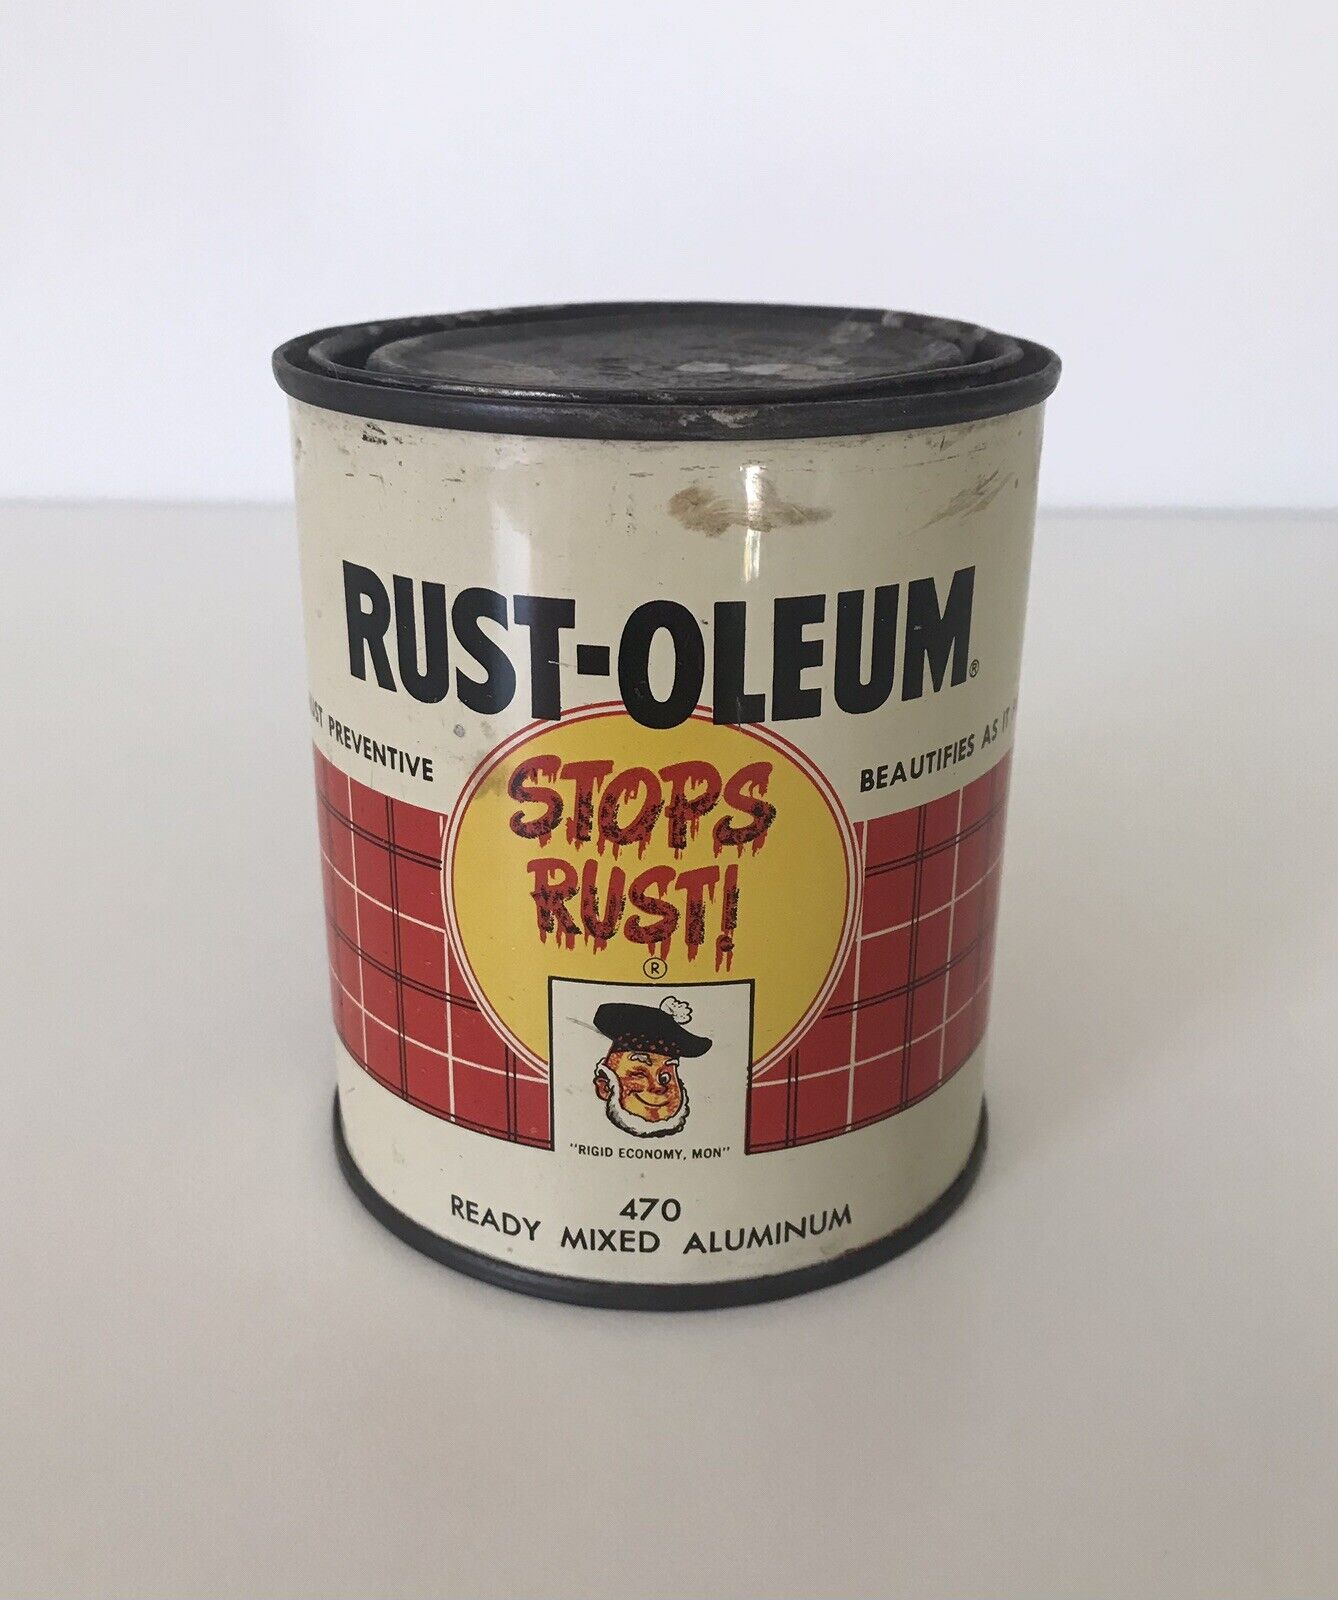 Vintage 1955 Rust-Oleum Paint Can Pint Size 470 Aluminum Silver G5